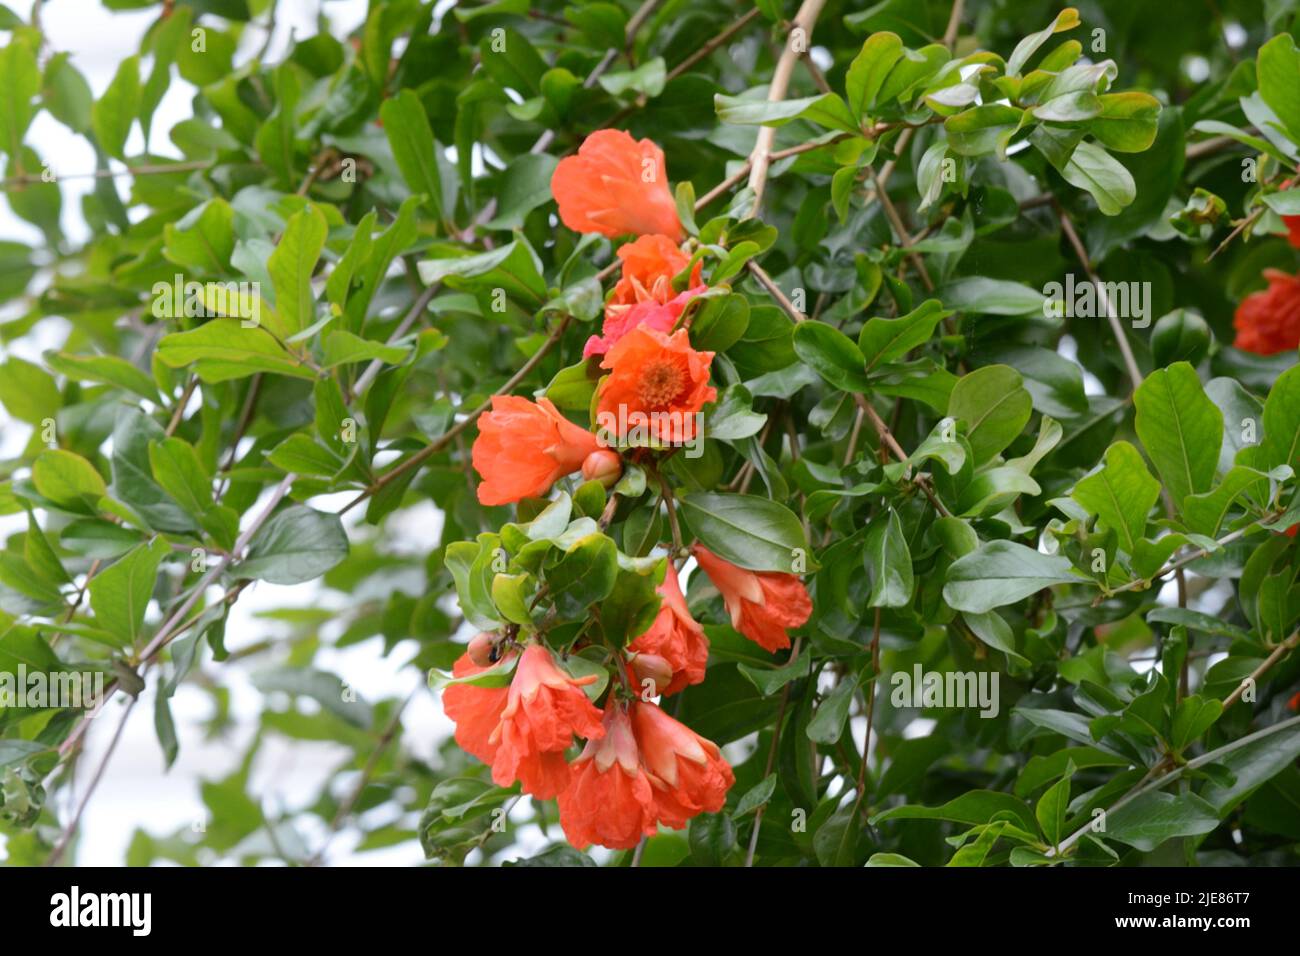 Fleurs en forme d'entonnoir rouge orangé de l'arbre Puncia granatum grenade Banque D'Images